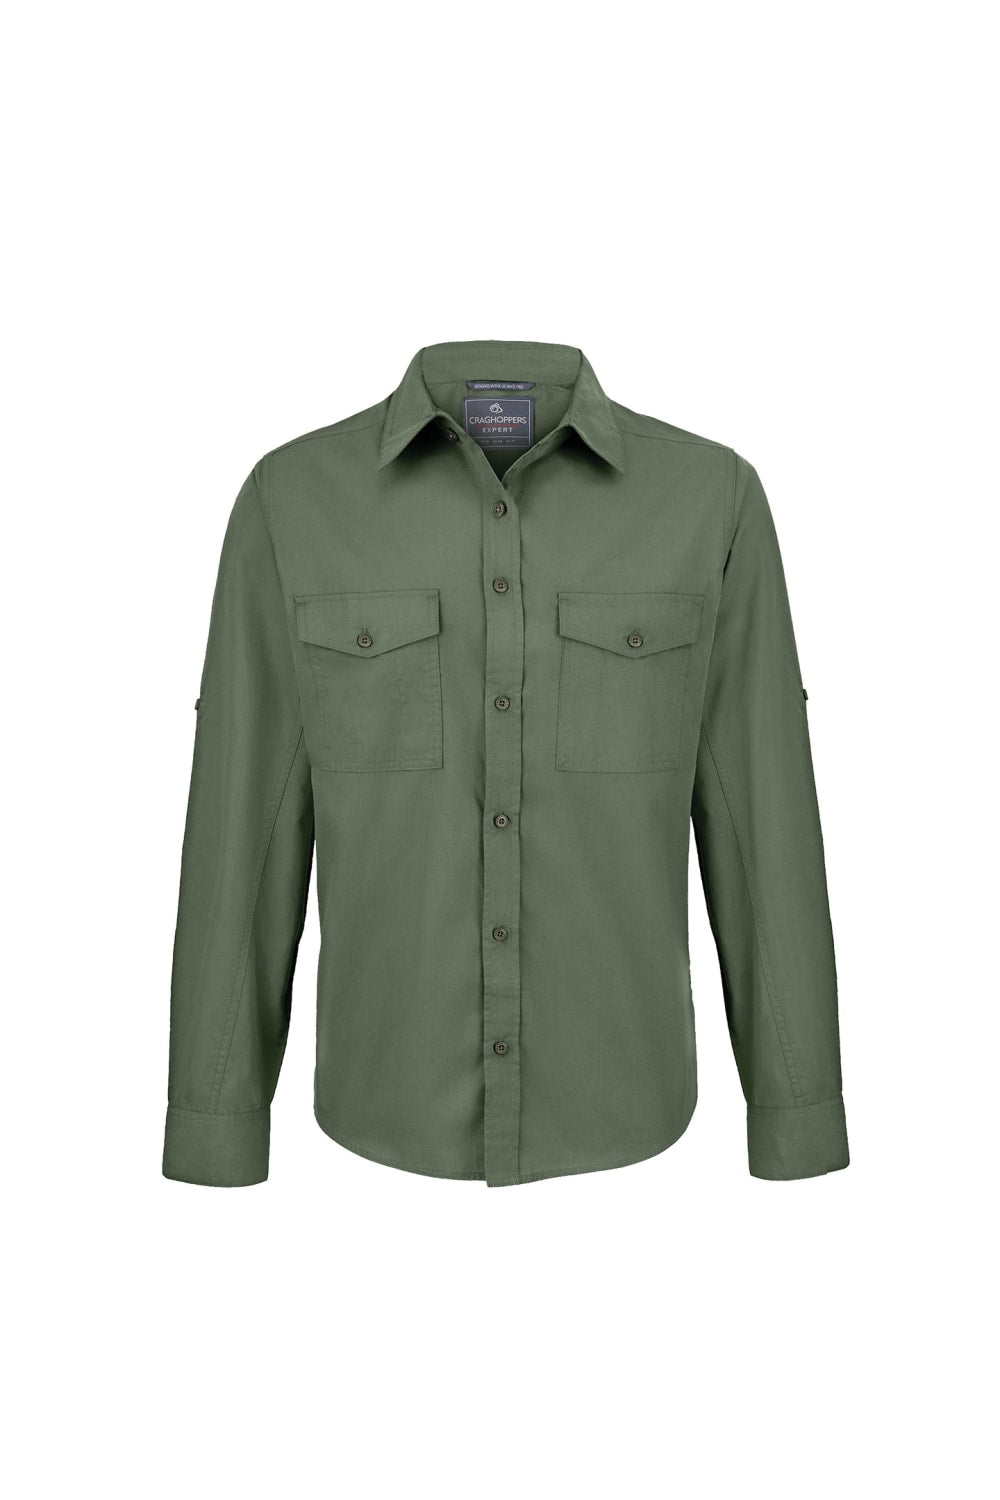 Craghoppers Mens Expert Kiwi Long-Sleeved Shirt (Cedar Green)